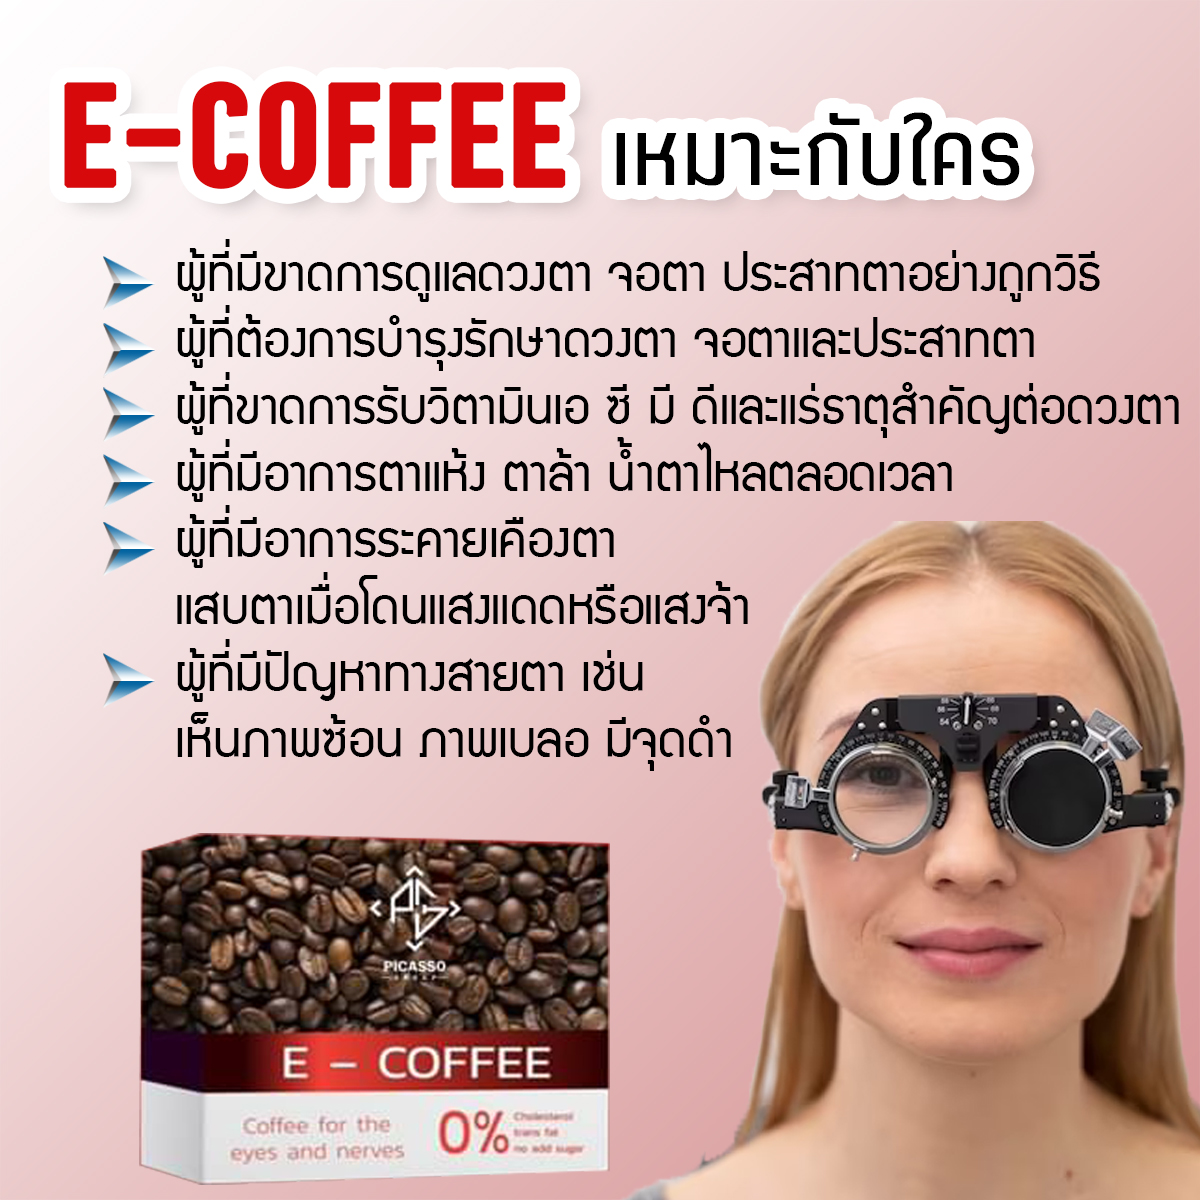 E-Coffee อี คอฟฟี่ กาแฟเพื่อการบำรุงสายตา